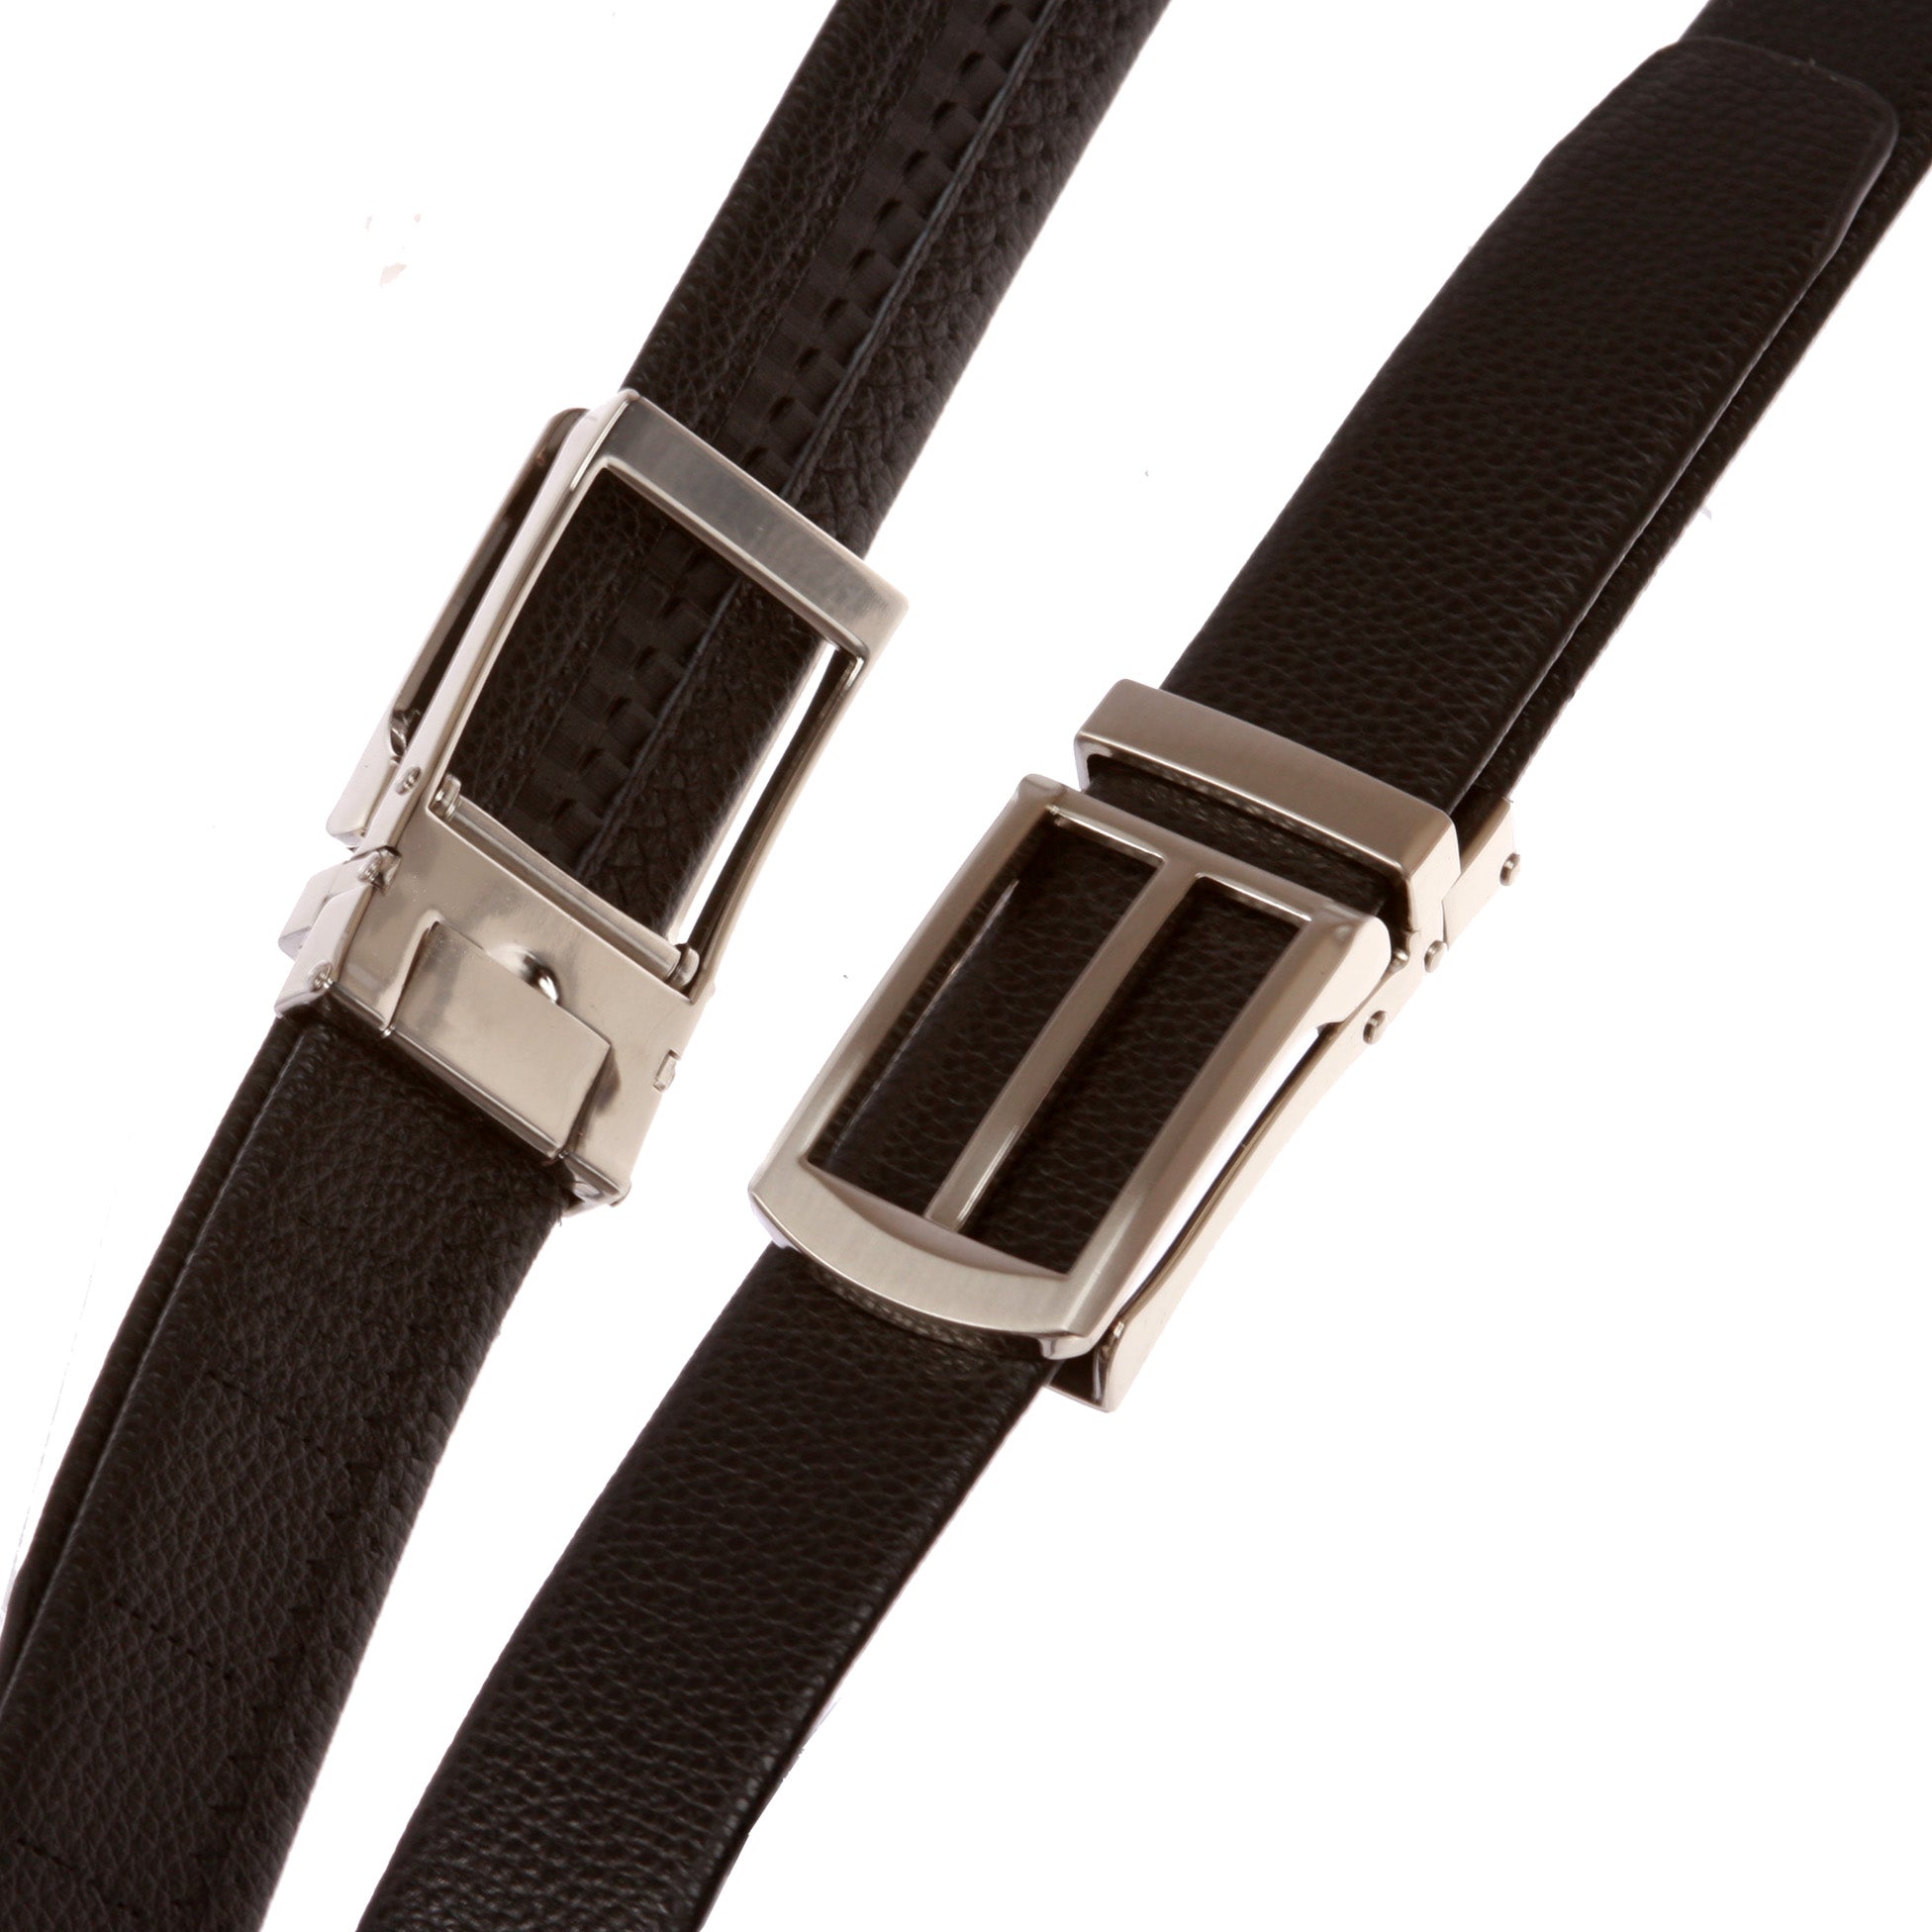 Men's 1 3/16" Microfiber Adjustable Automatic Ratchet Slide Perfect Fit Belt